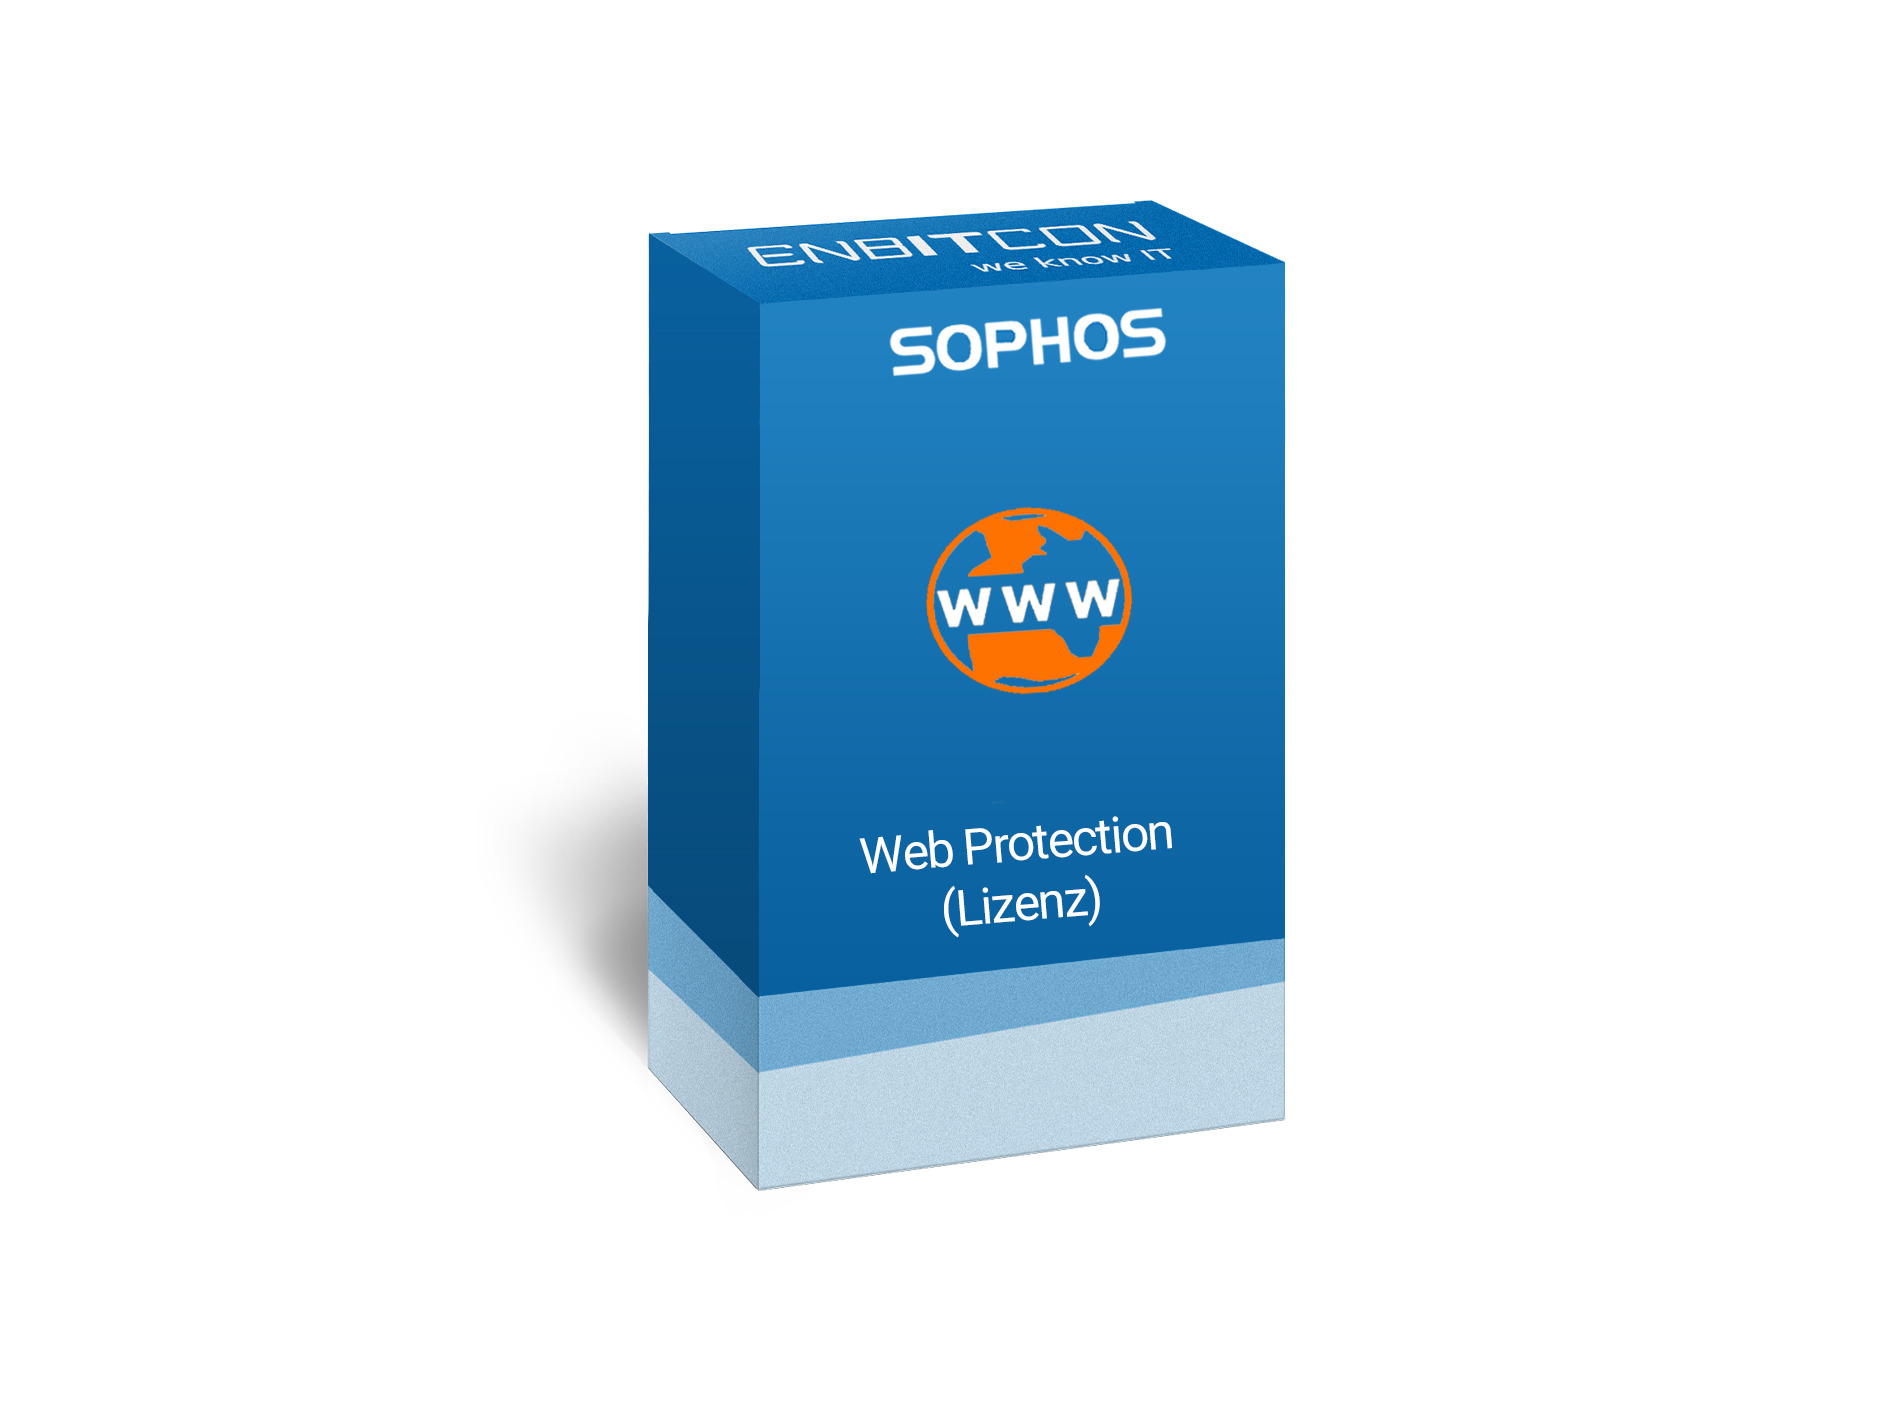 Sophos Web Protection Lizenz Vorschaubild bestehend aus einem blauen Schild, indem sich ein WWW befindet